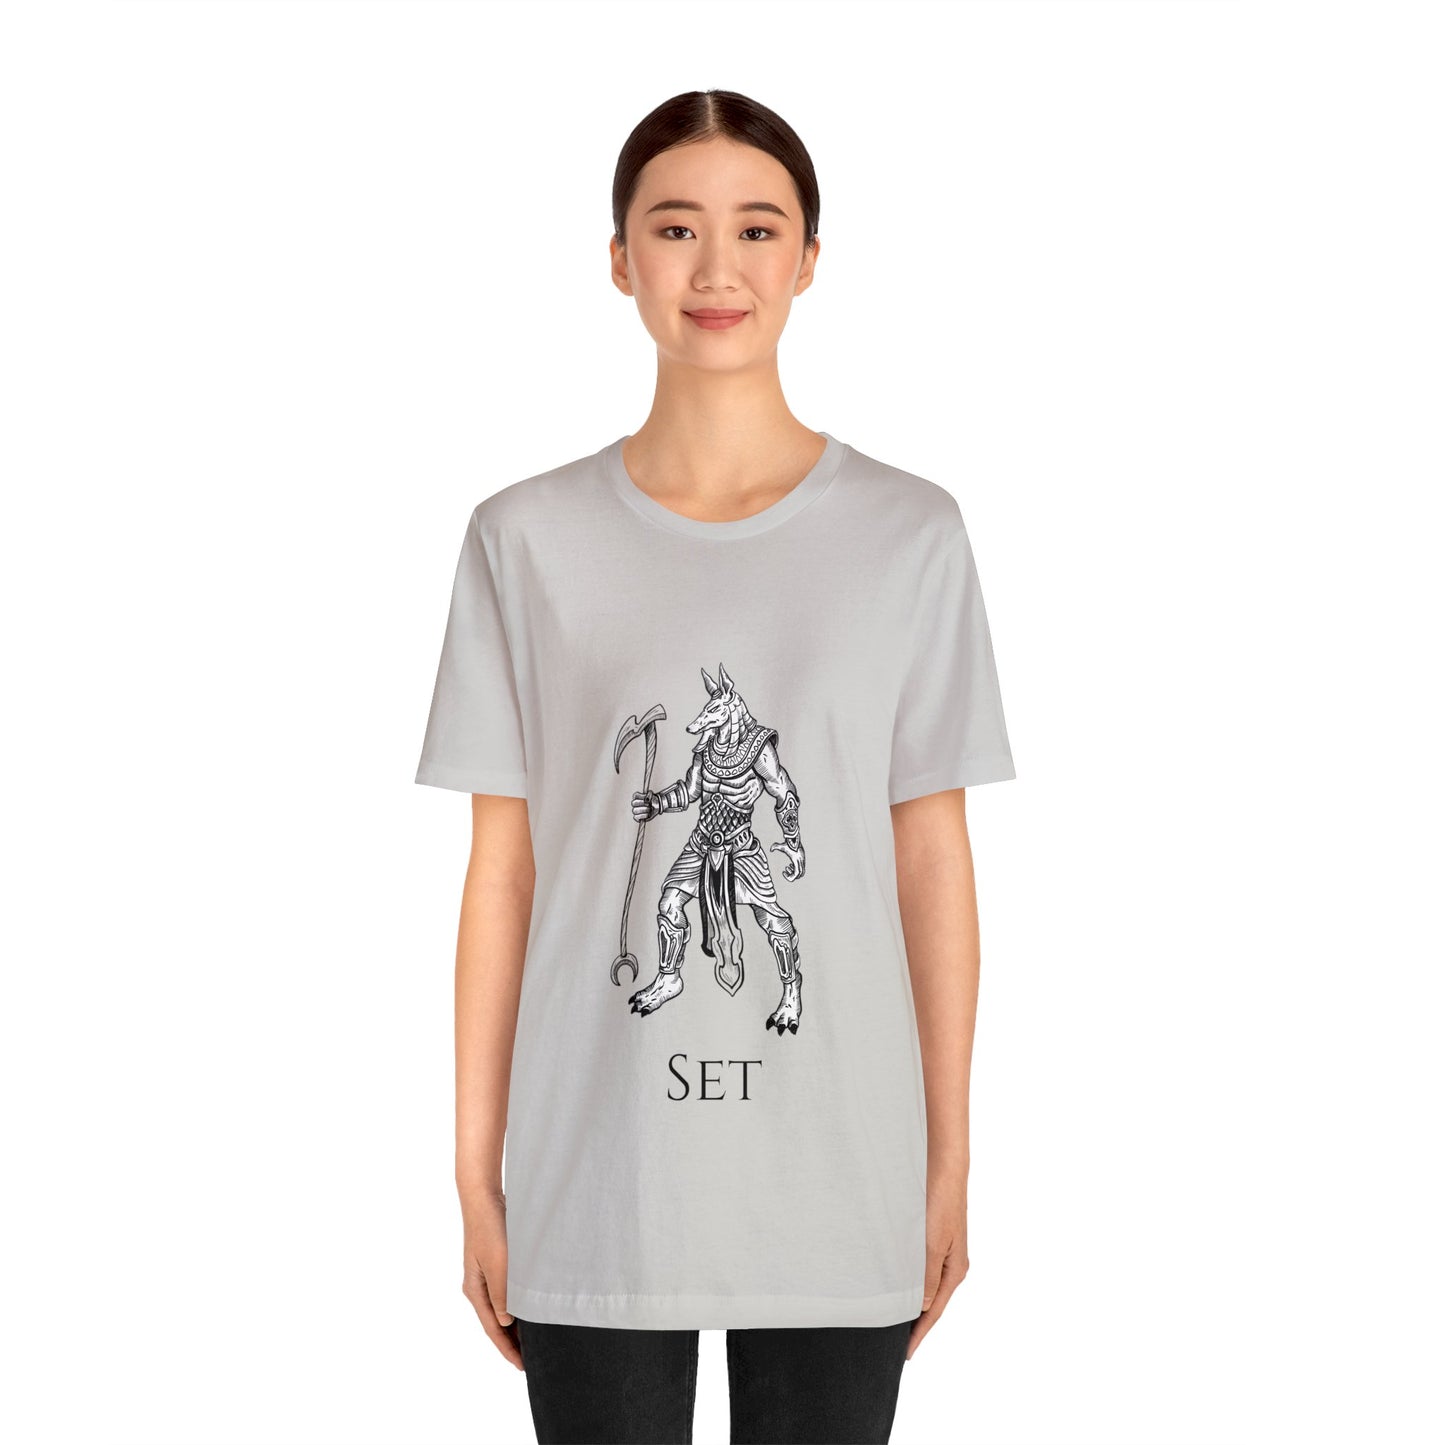 Egyptian God Set/Seth T-shirt -Unisex